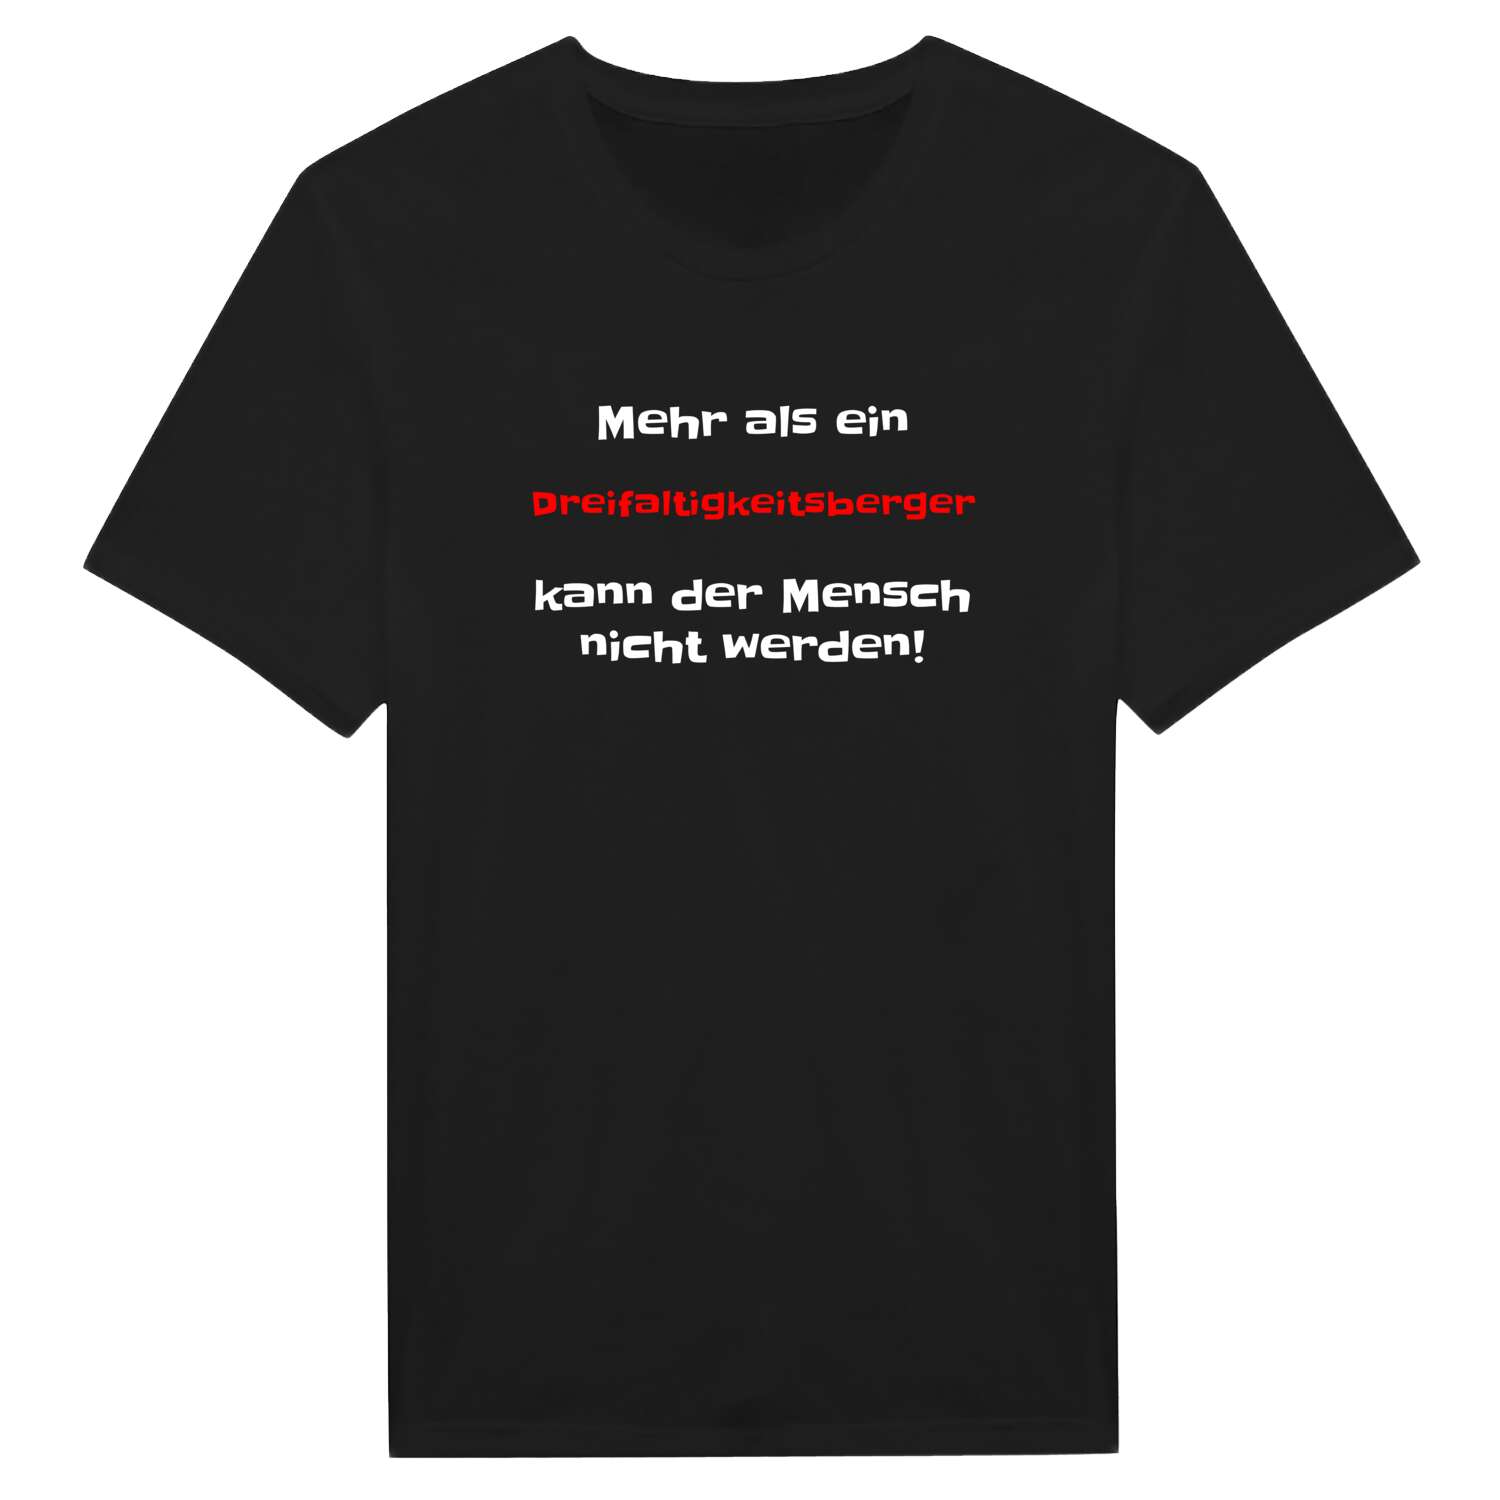 Dreifaltigkeitsberg T-Shirt »Mehr als ein«